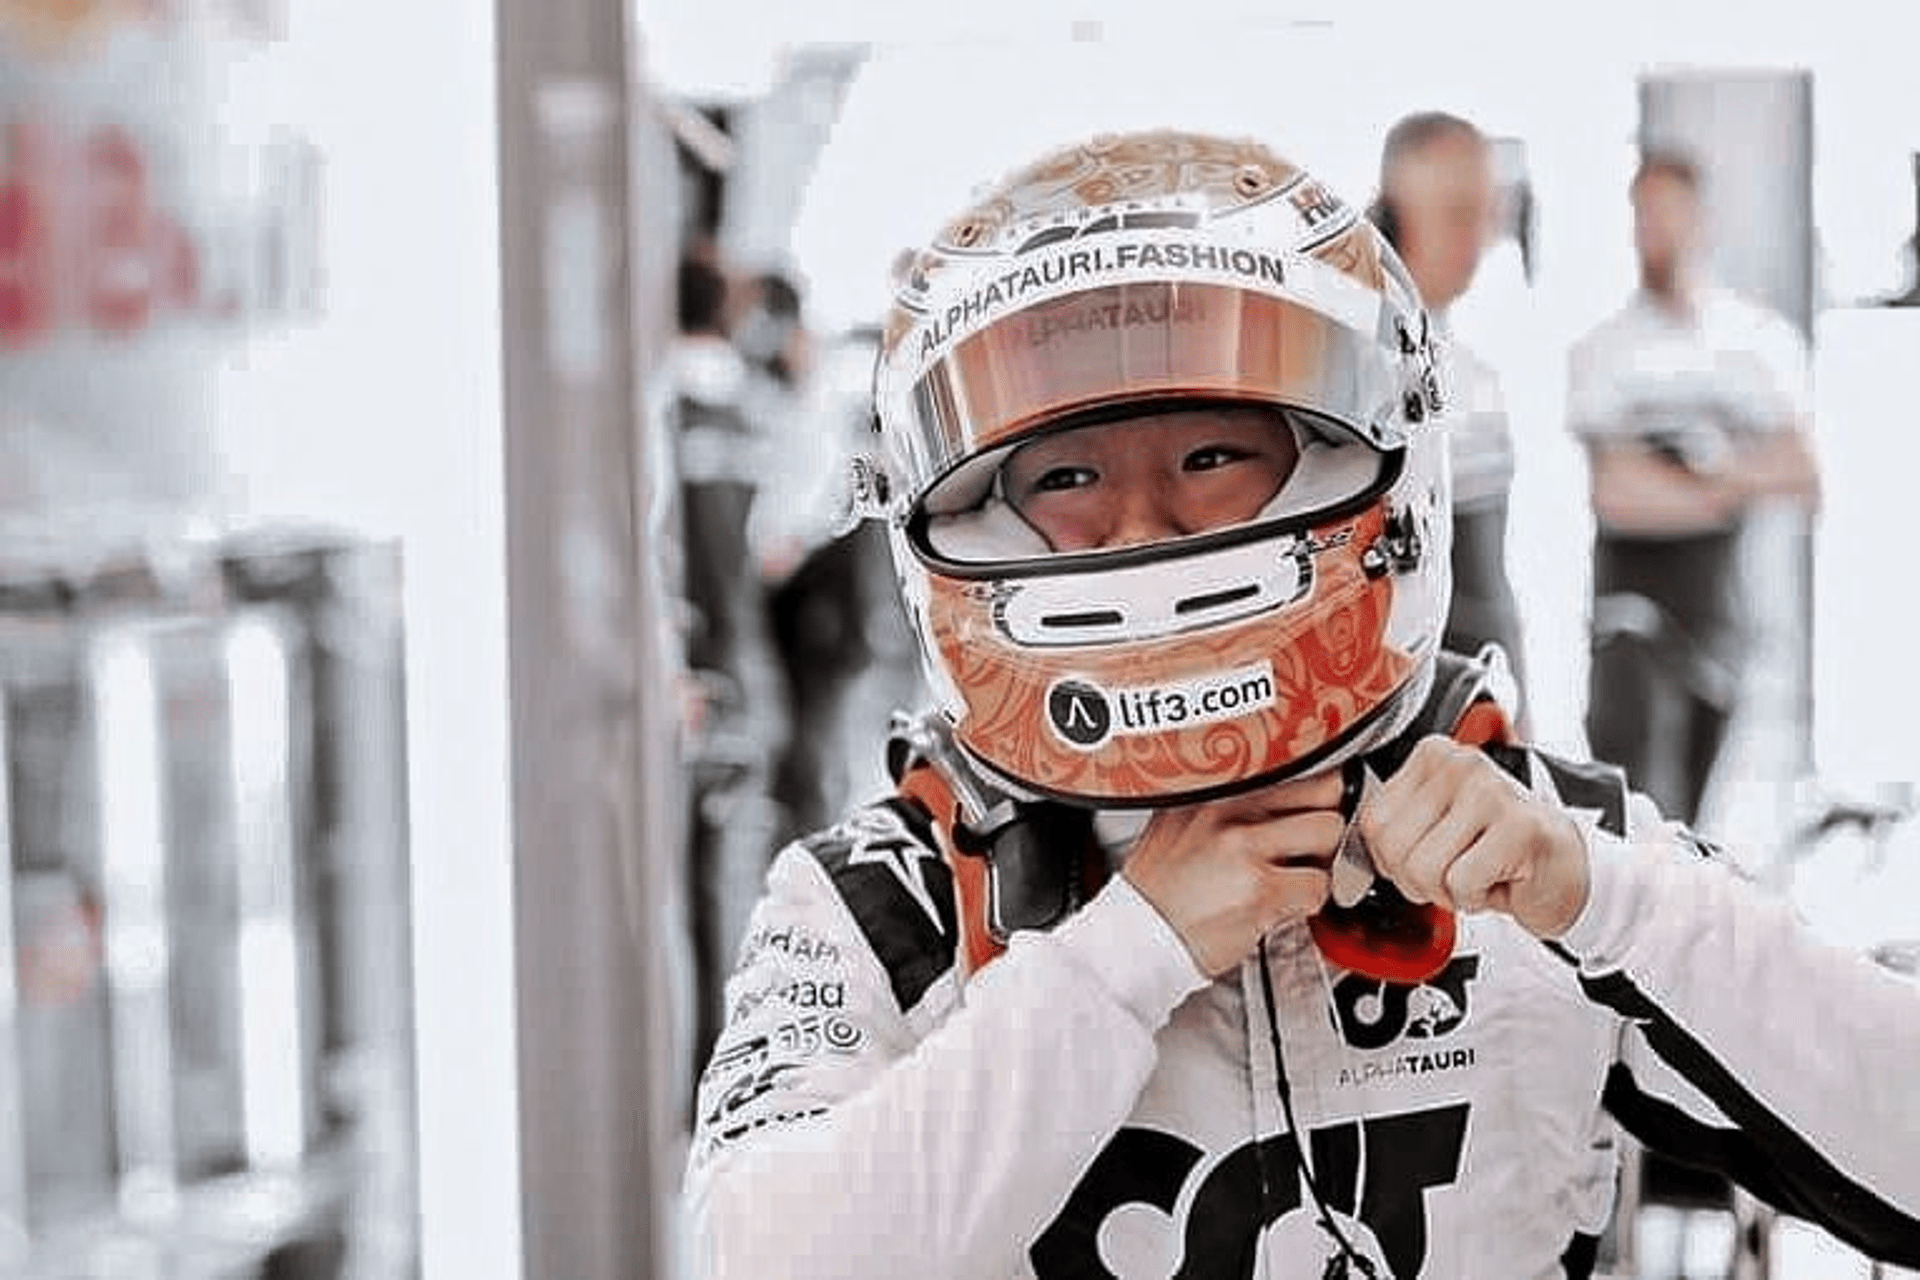 Il logotipo LIF3.com sul casco di Yuki Tsunoda, pilota della Scuderia Alpha Tauri nel 2022 in Formula 1